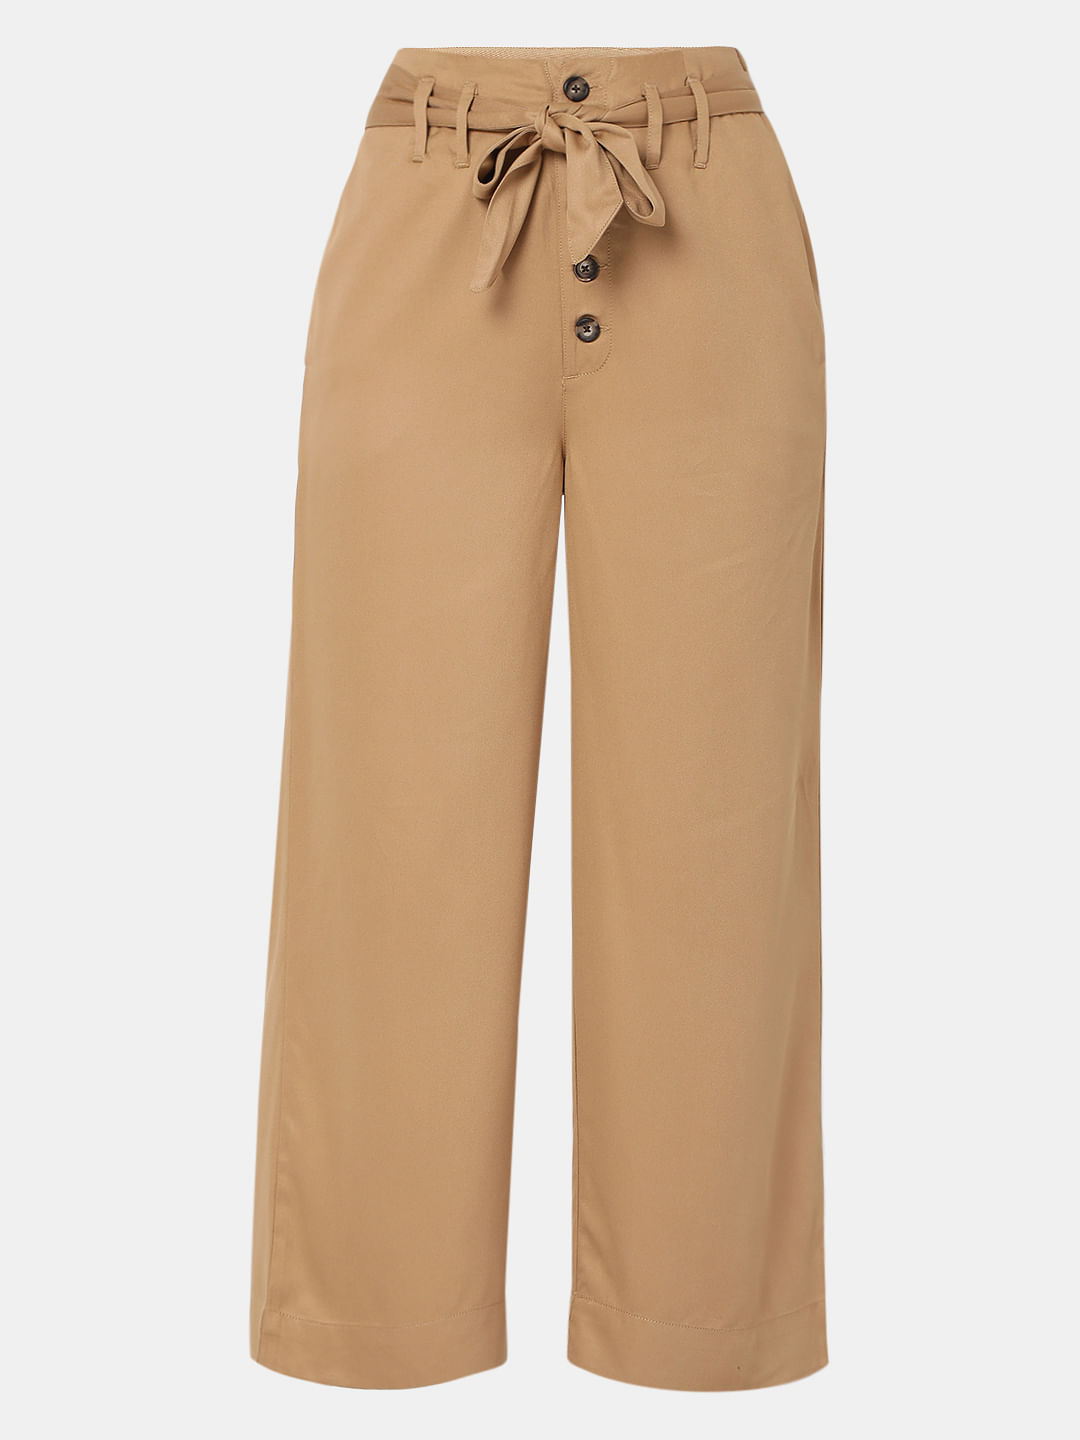 Women stylish Cotton Blend Trousers/Pants Combo of 2